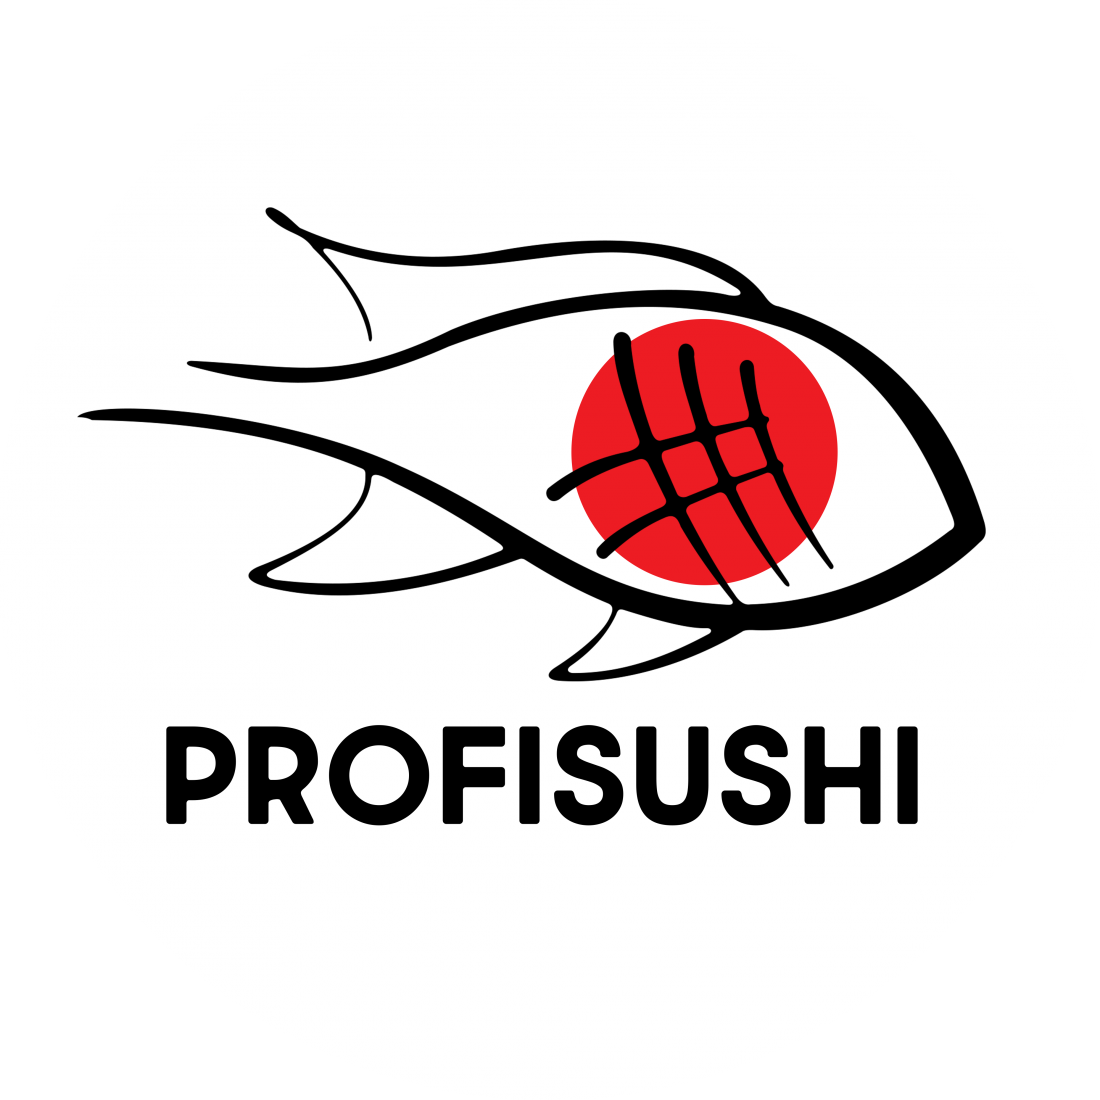 Спецпредложение! Сет за 37,20 р/40 шт, суши-сеты от 30,60 р/до 1900 г от "Profisushi"